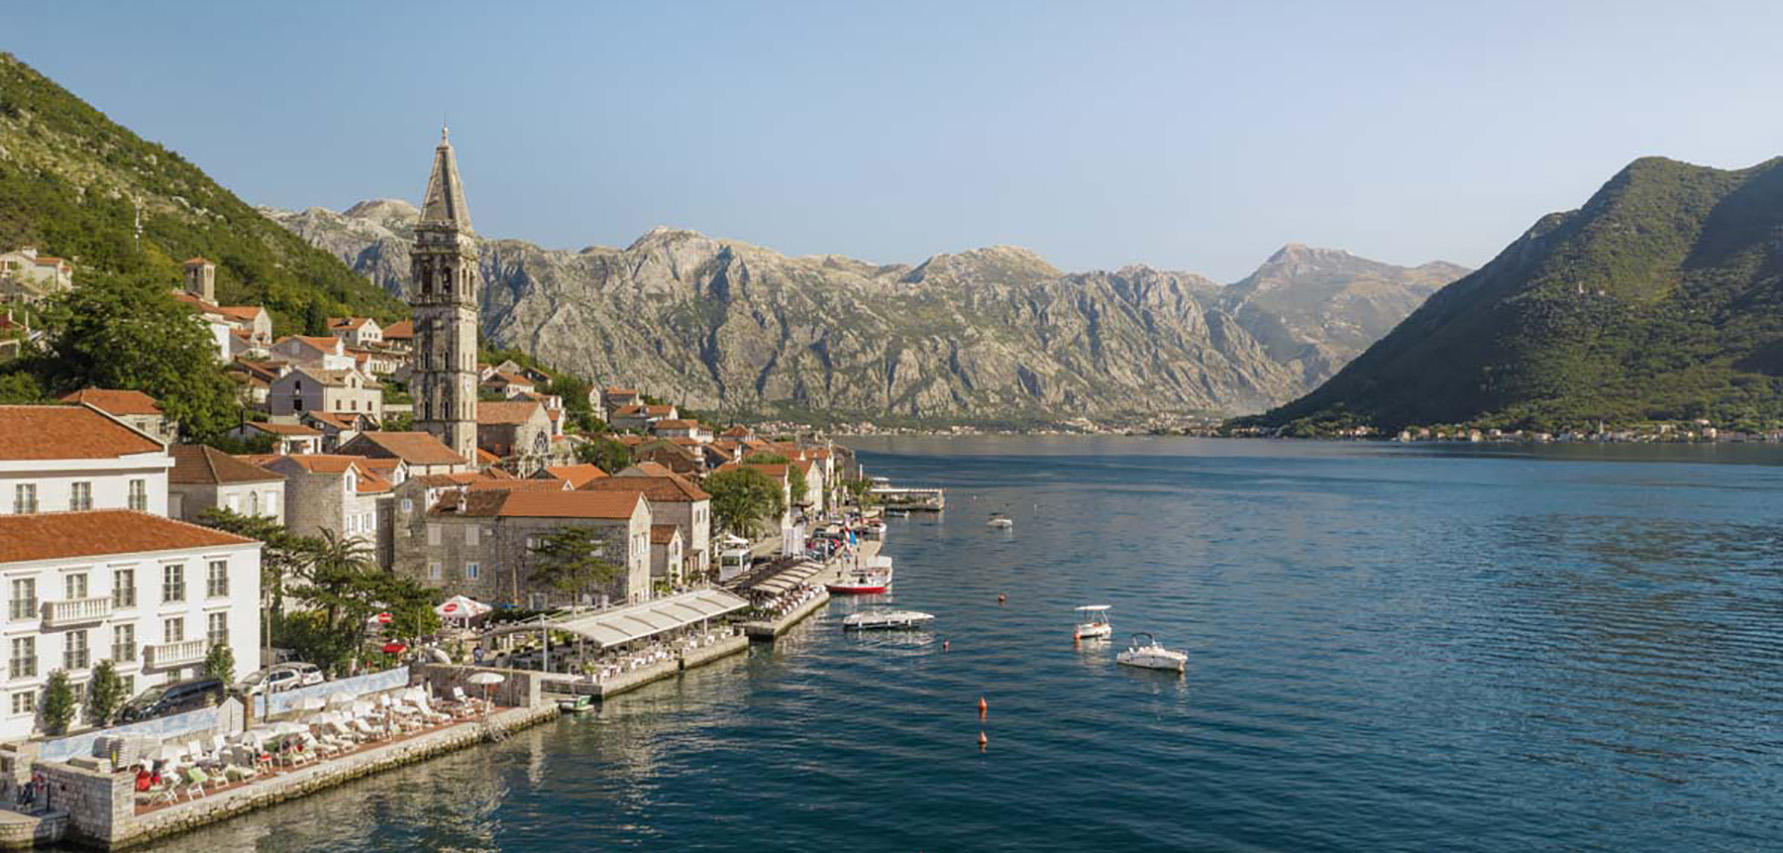 Luxusresort One & Only in Montenegro fotografiert mit der Drone bugbear über REISS Reisen Luxusreisen